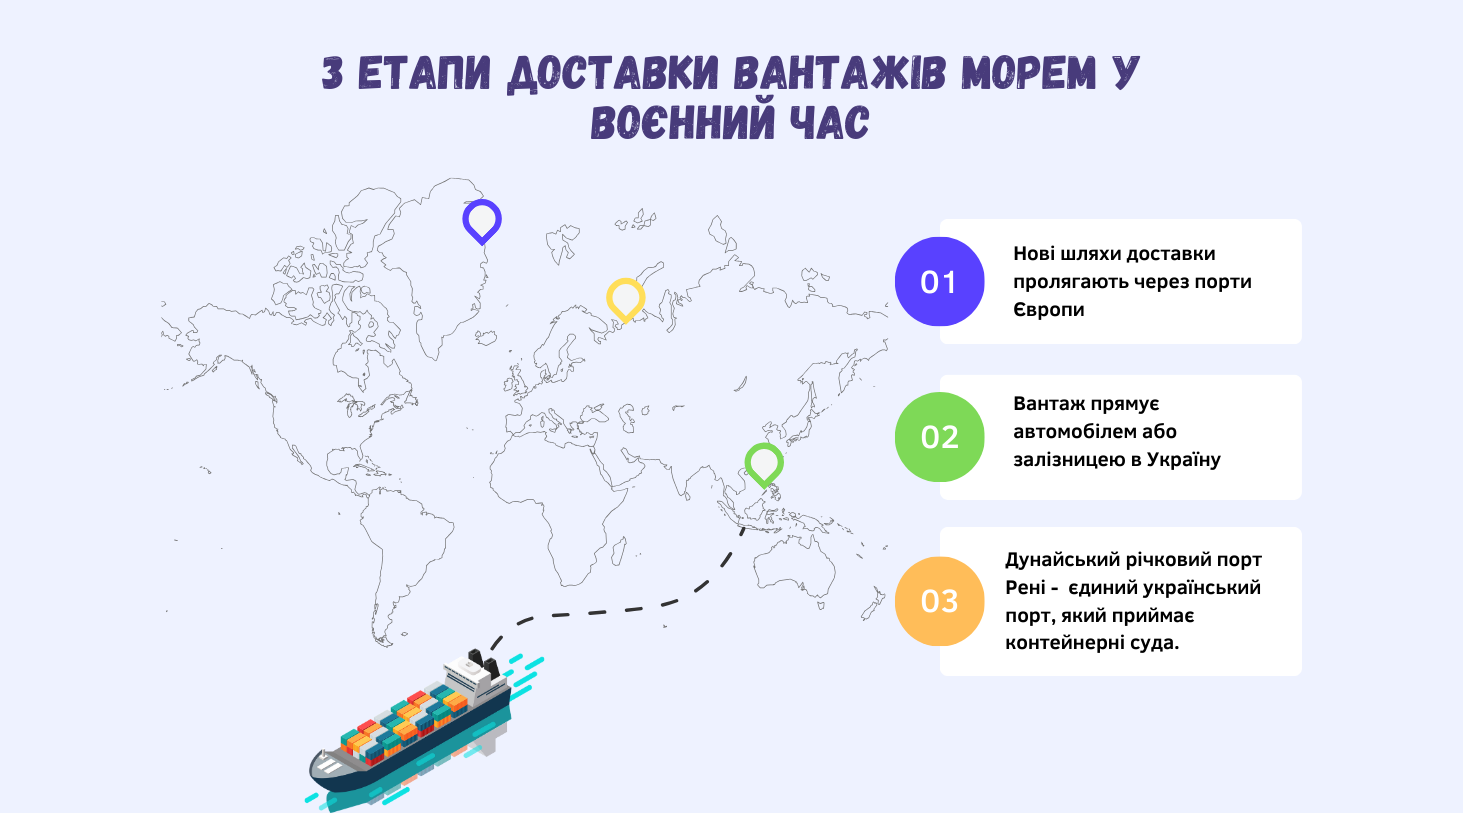 Морські вантажні перевезення в Україну у воєнний час_зображення